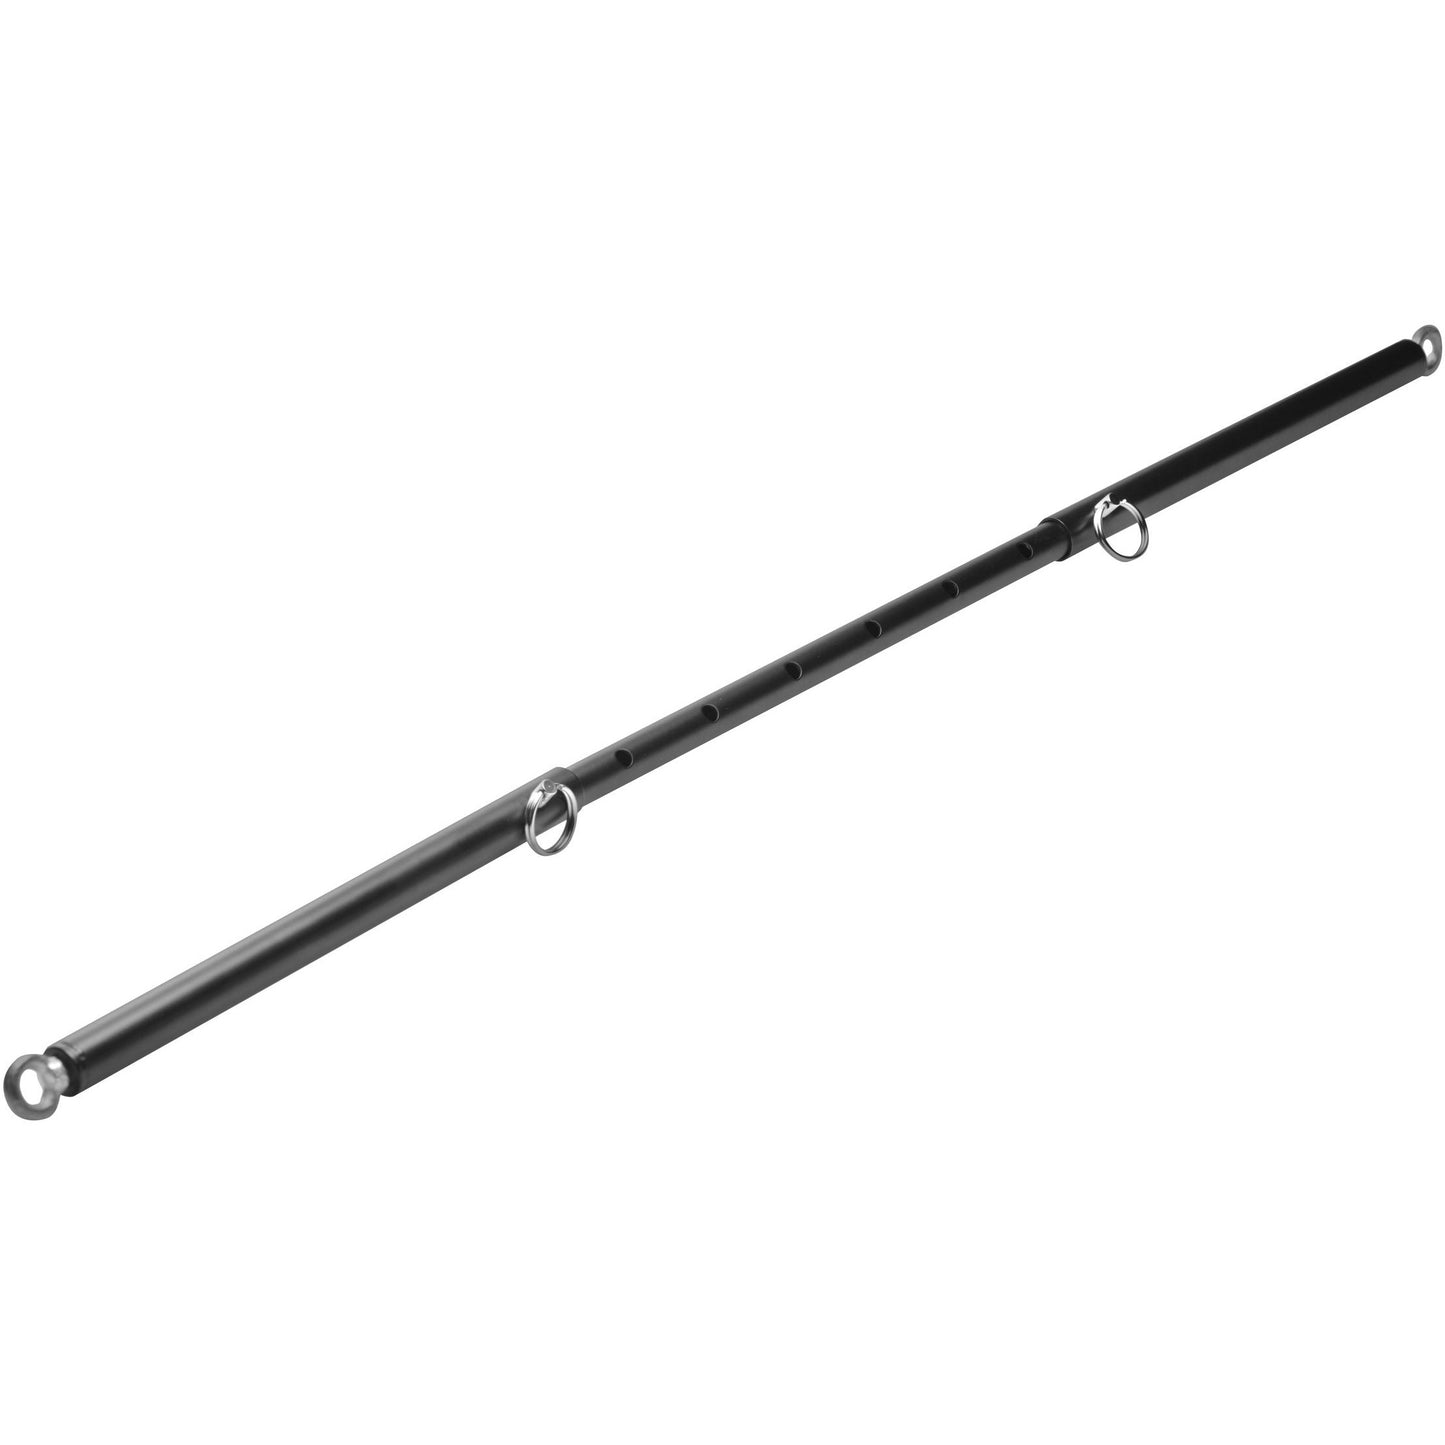 Adjustable Steel Spreader Bar - Black